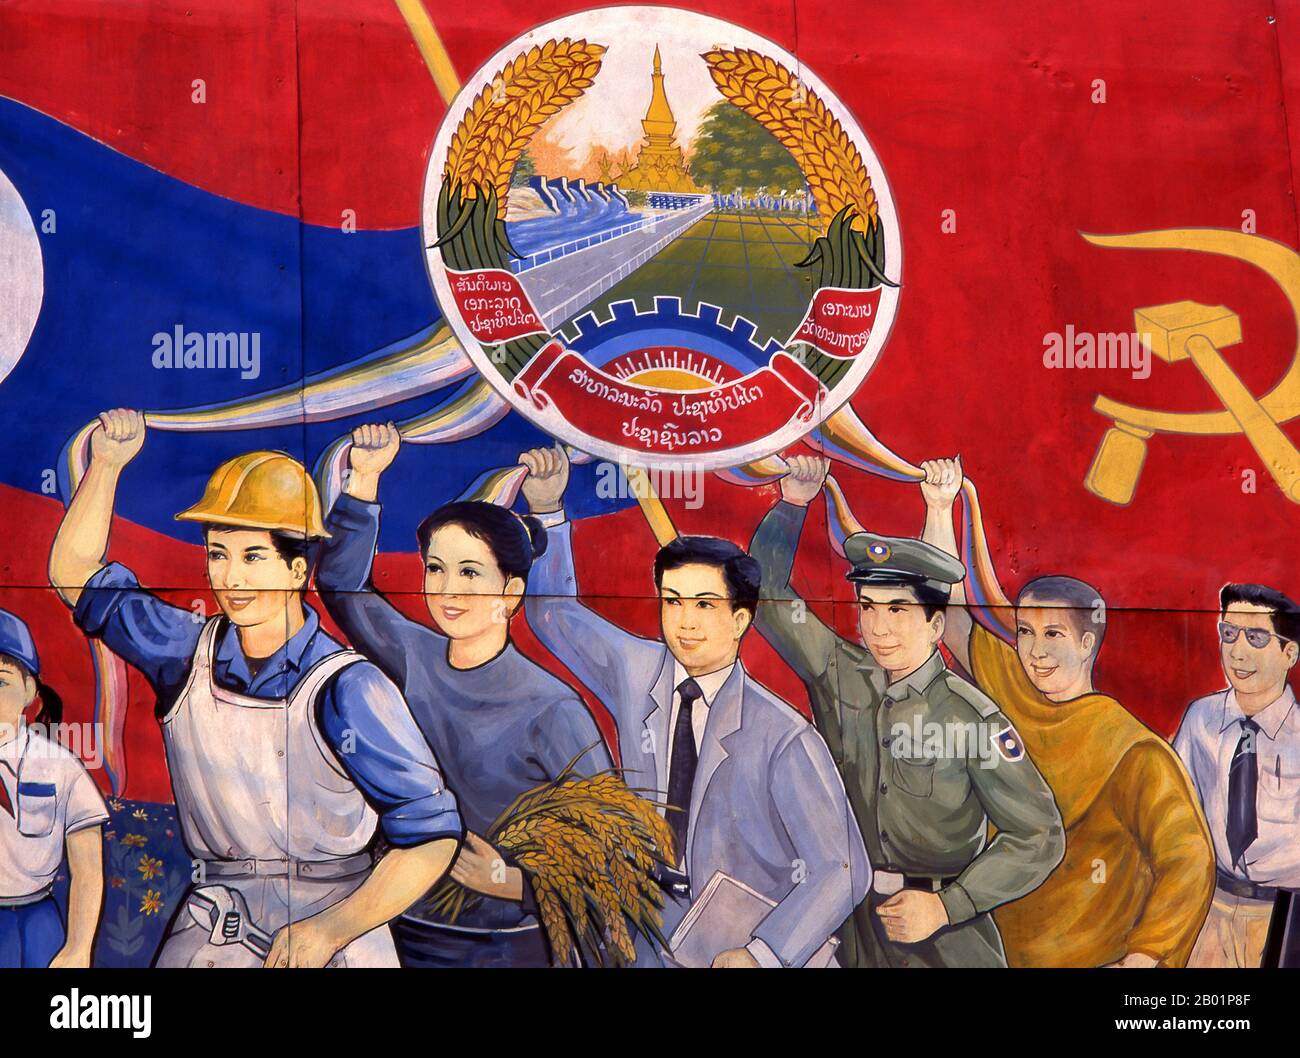 Laos: Politisches Plakat im Stil des revolutionären Sozialistischen Realismus auf den Straßen von Vientiane. Sozialistischer Realismus ist ein Stil realistischer Kunst, der in der Sowjetunion entwickelt wurde und in anderen kommunistischen Ländern zu einem dominanten Stil wurde. Der sozialistische Realismus ist ein teleologisch orientierter Stil, der die Ziele des Sozialismus und Kommunismus fördern soll. Obwohl verwandt, sollte sie nicht mit dem sozialen Realismus verwechselt werden, einer Art Kunst, die Themen von sozialem Interesse realistisch darstellt. Im Gegensatz zum sozialen Realismus verherrlicht der sozialistische Realismus oft die Rolle der Armen. Stockfoto